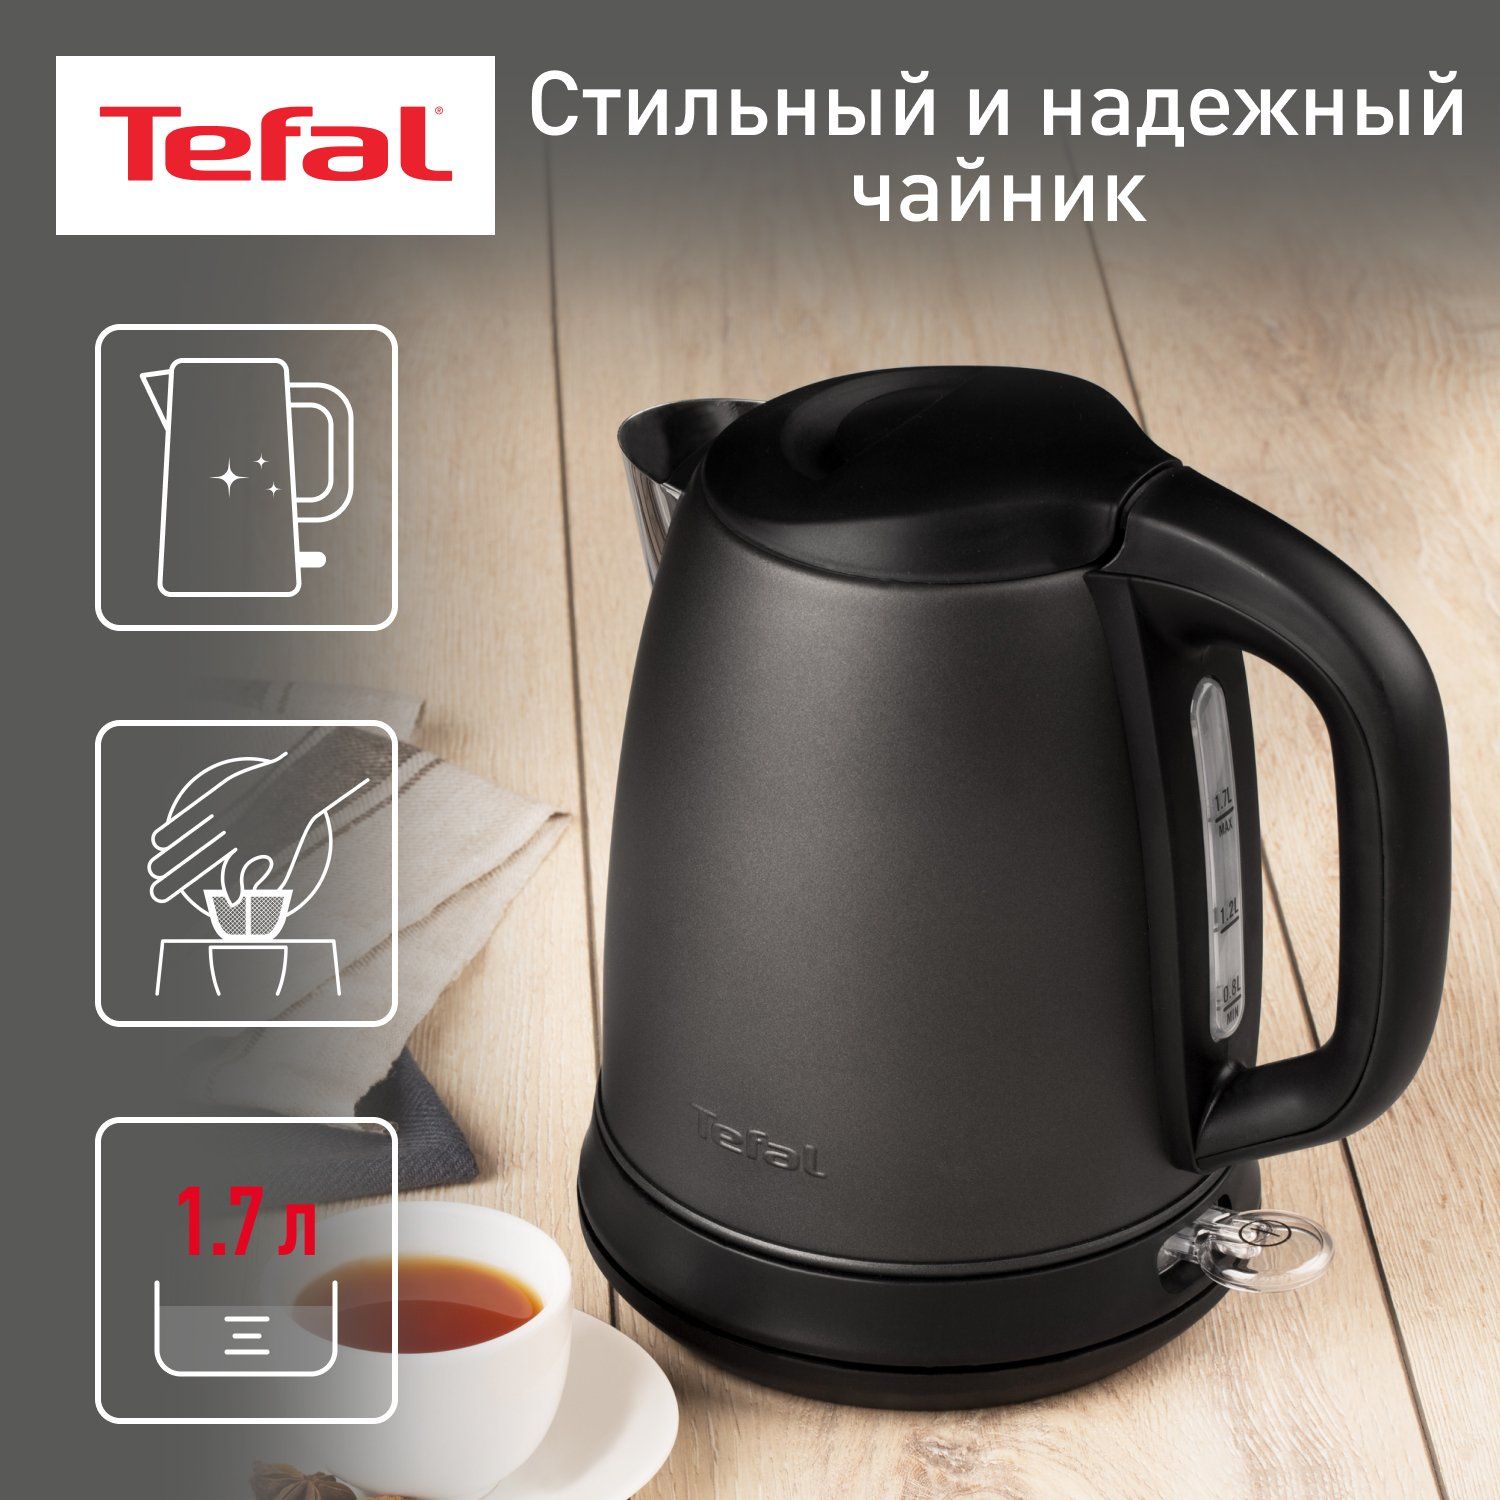 Чайник электрический Tefal Confidence KI270930, 1.7 л, графит/черный фильтр tefal zr904501